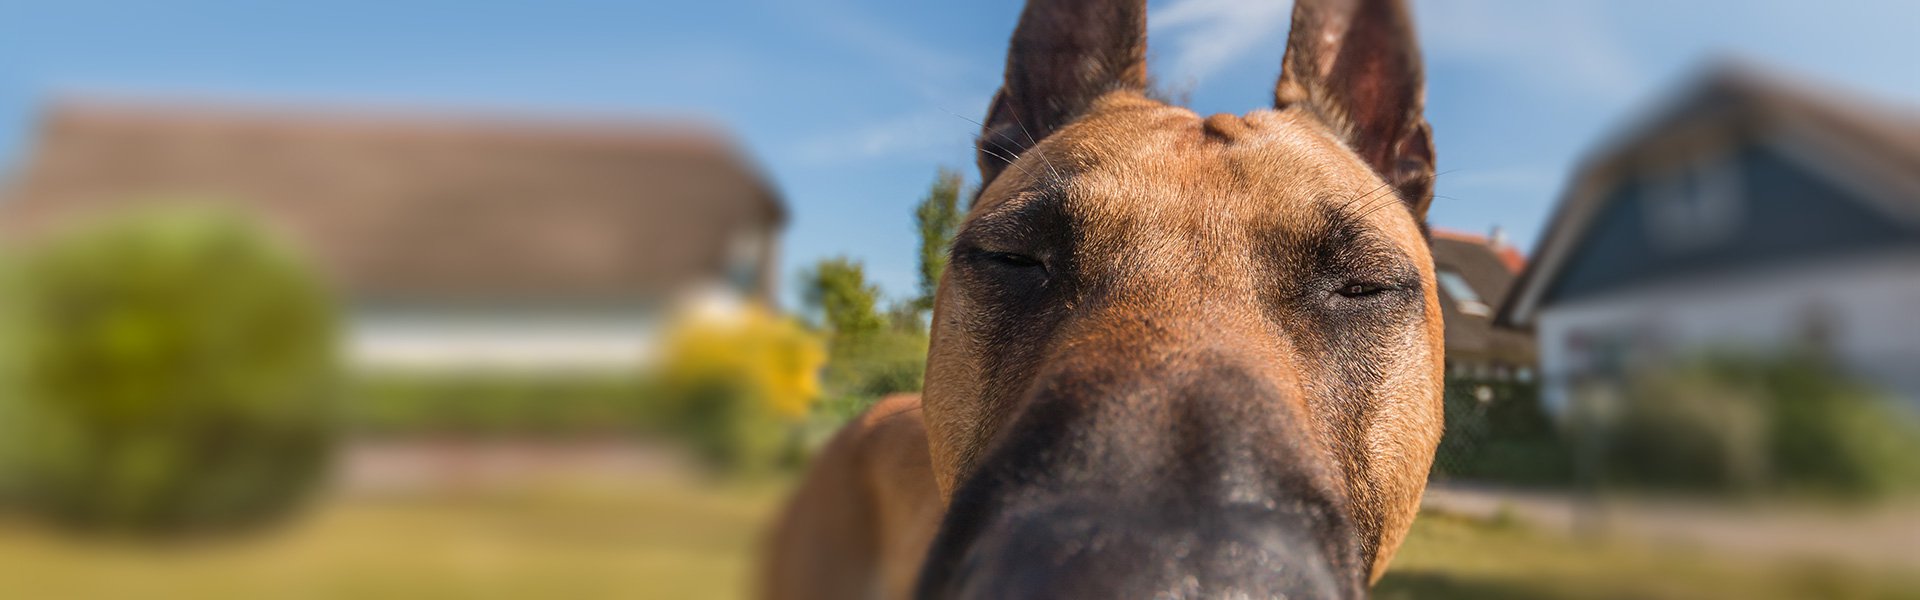 Hundeschule HVL – Hunde verstehen lernen